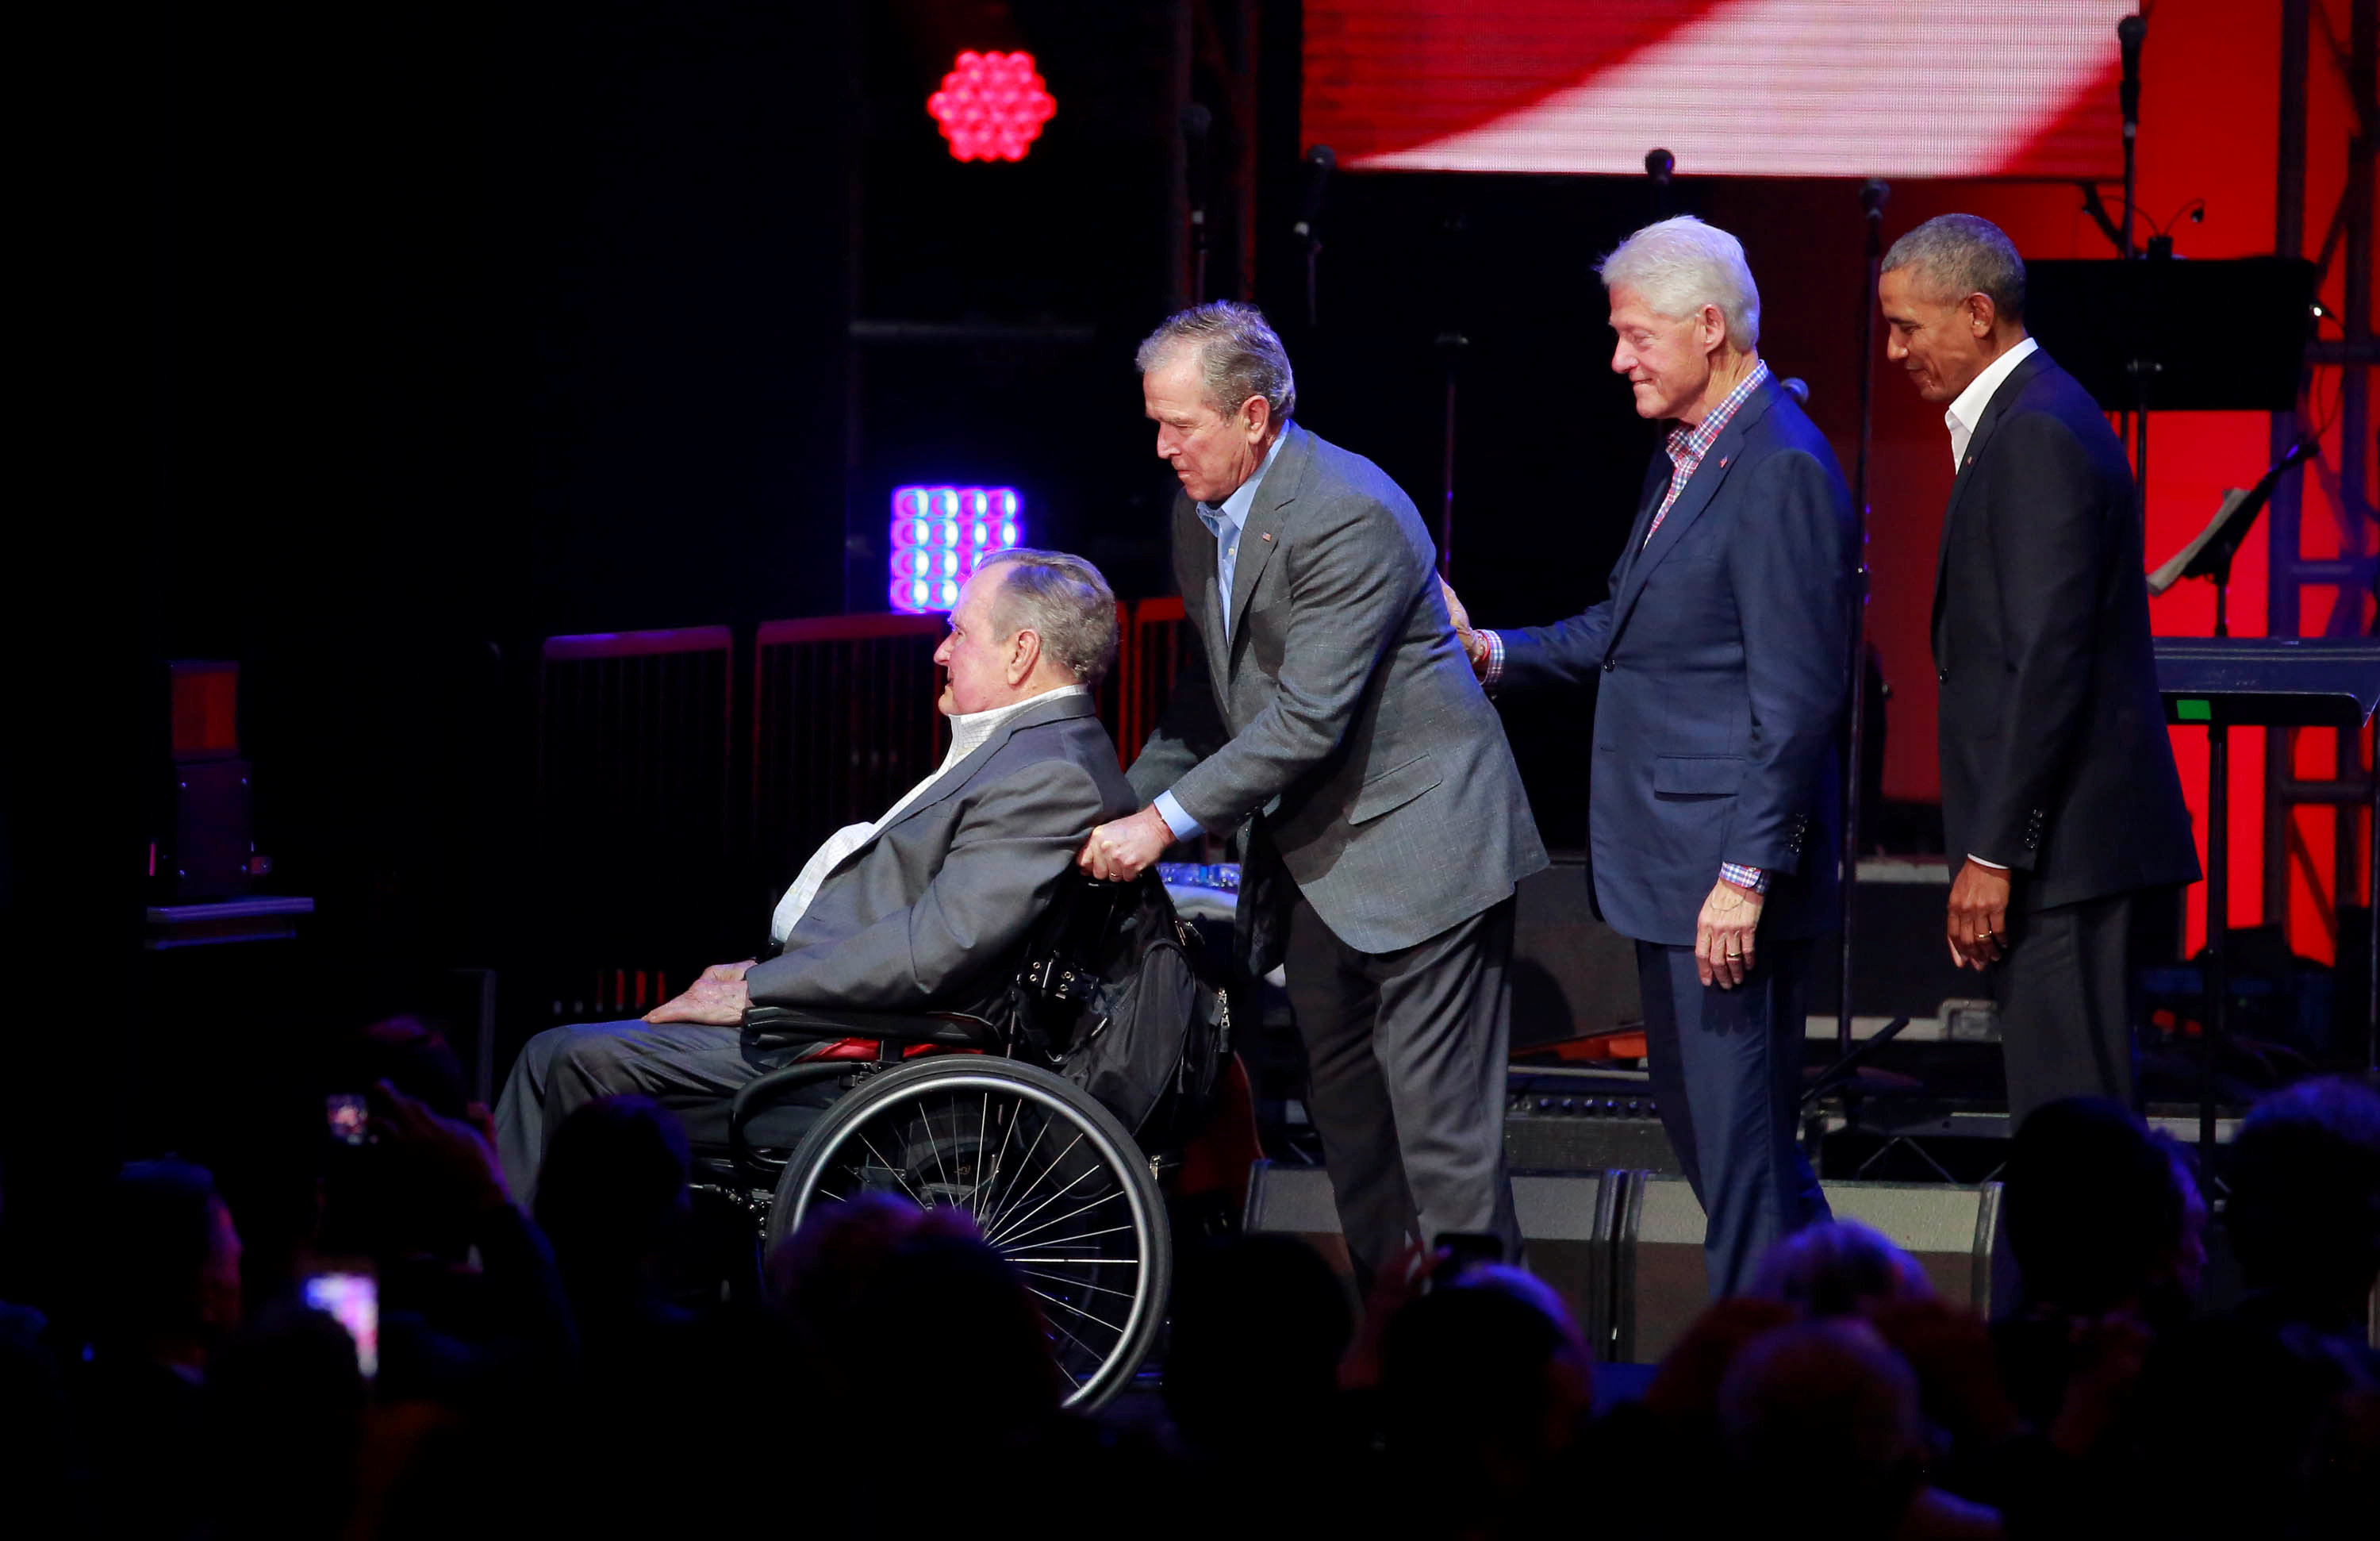 جيمى كارتر وجورج بوش الابن وبيل كلينتون وباراك أوباما